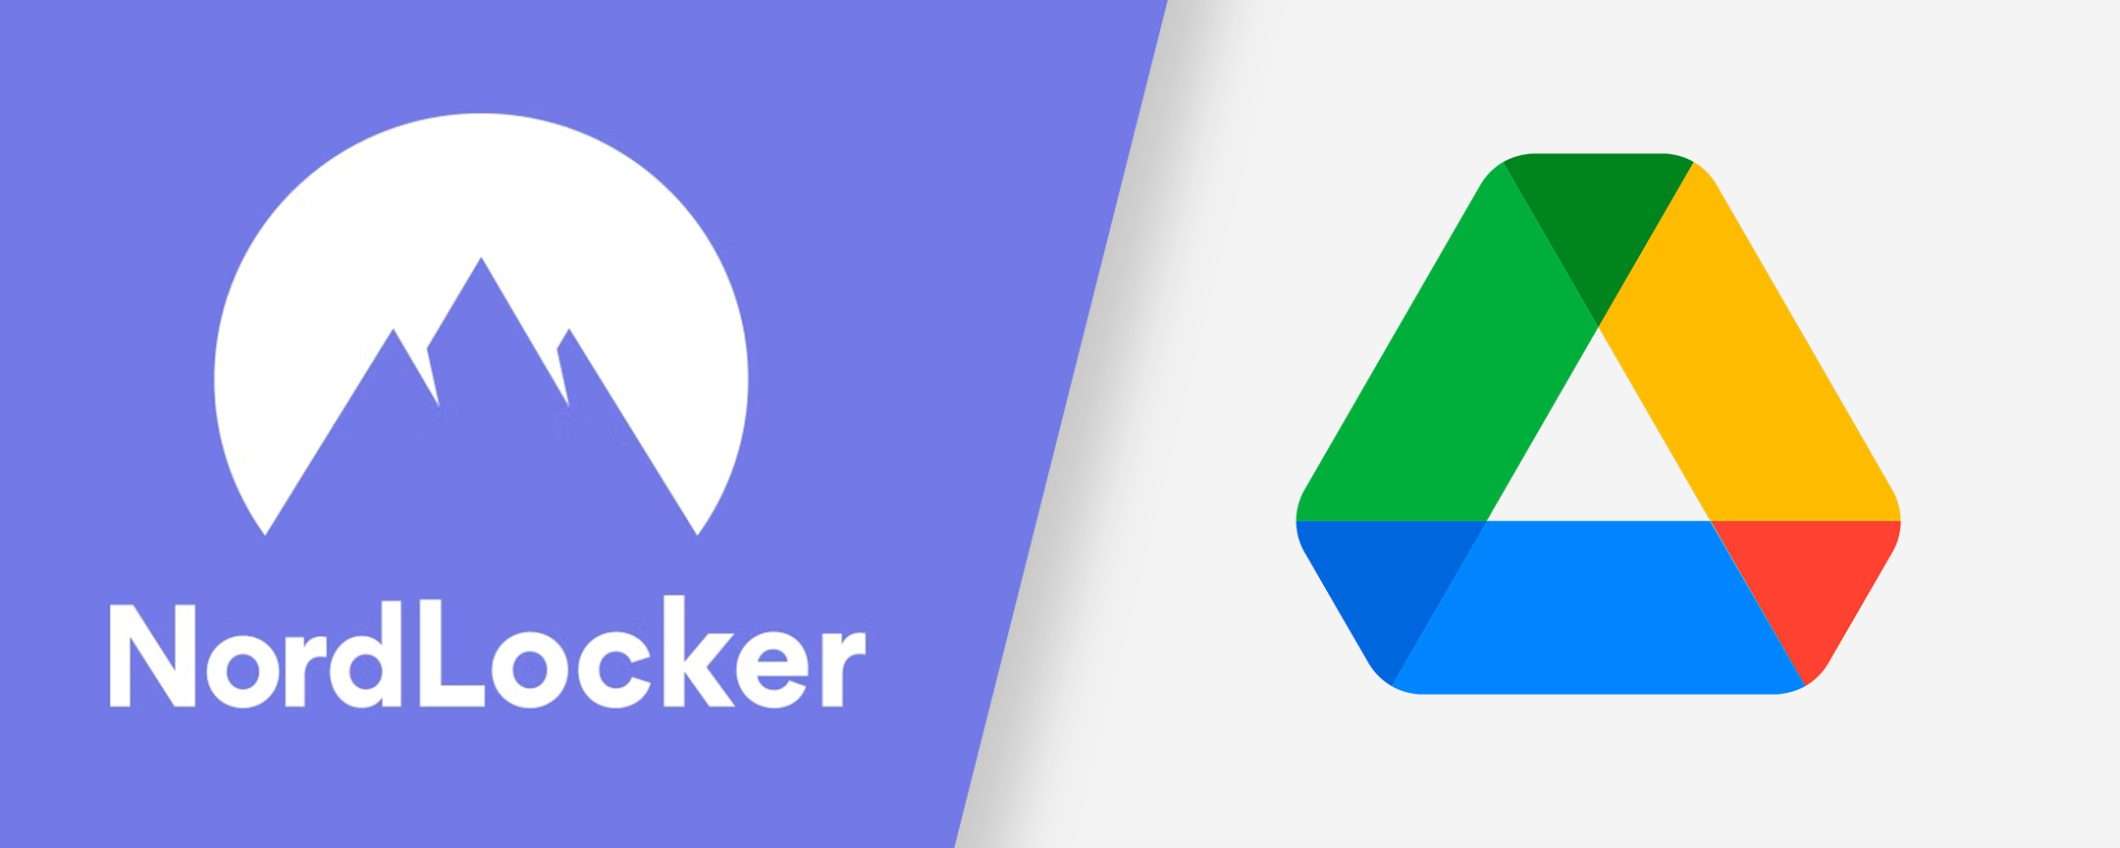 NordLocker vs Google Drive: perché scegliere il primo